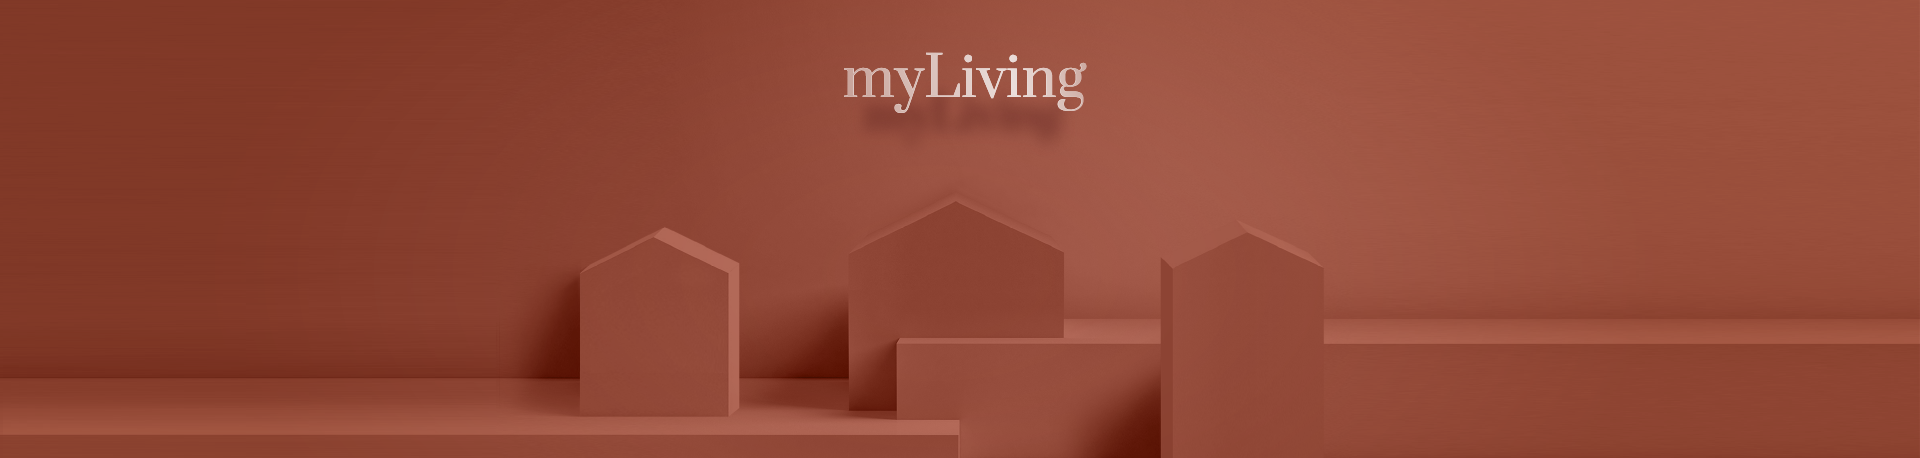 myLiving - Tạp chí về nội thất kiến trúc và phong cách sống dành cho gia đình trẻ 